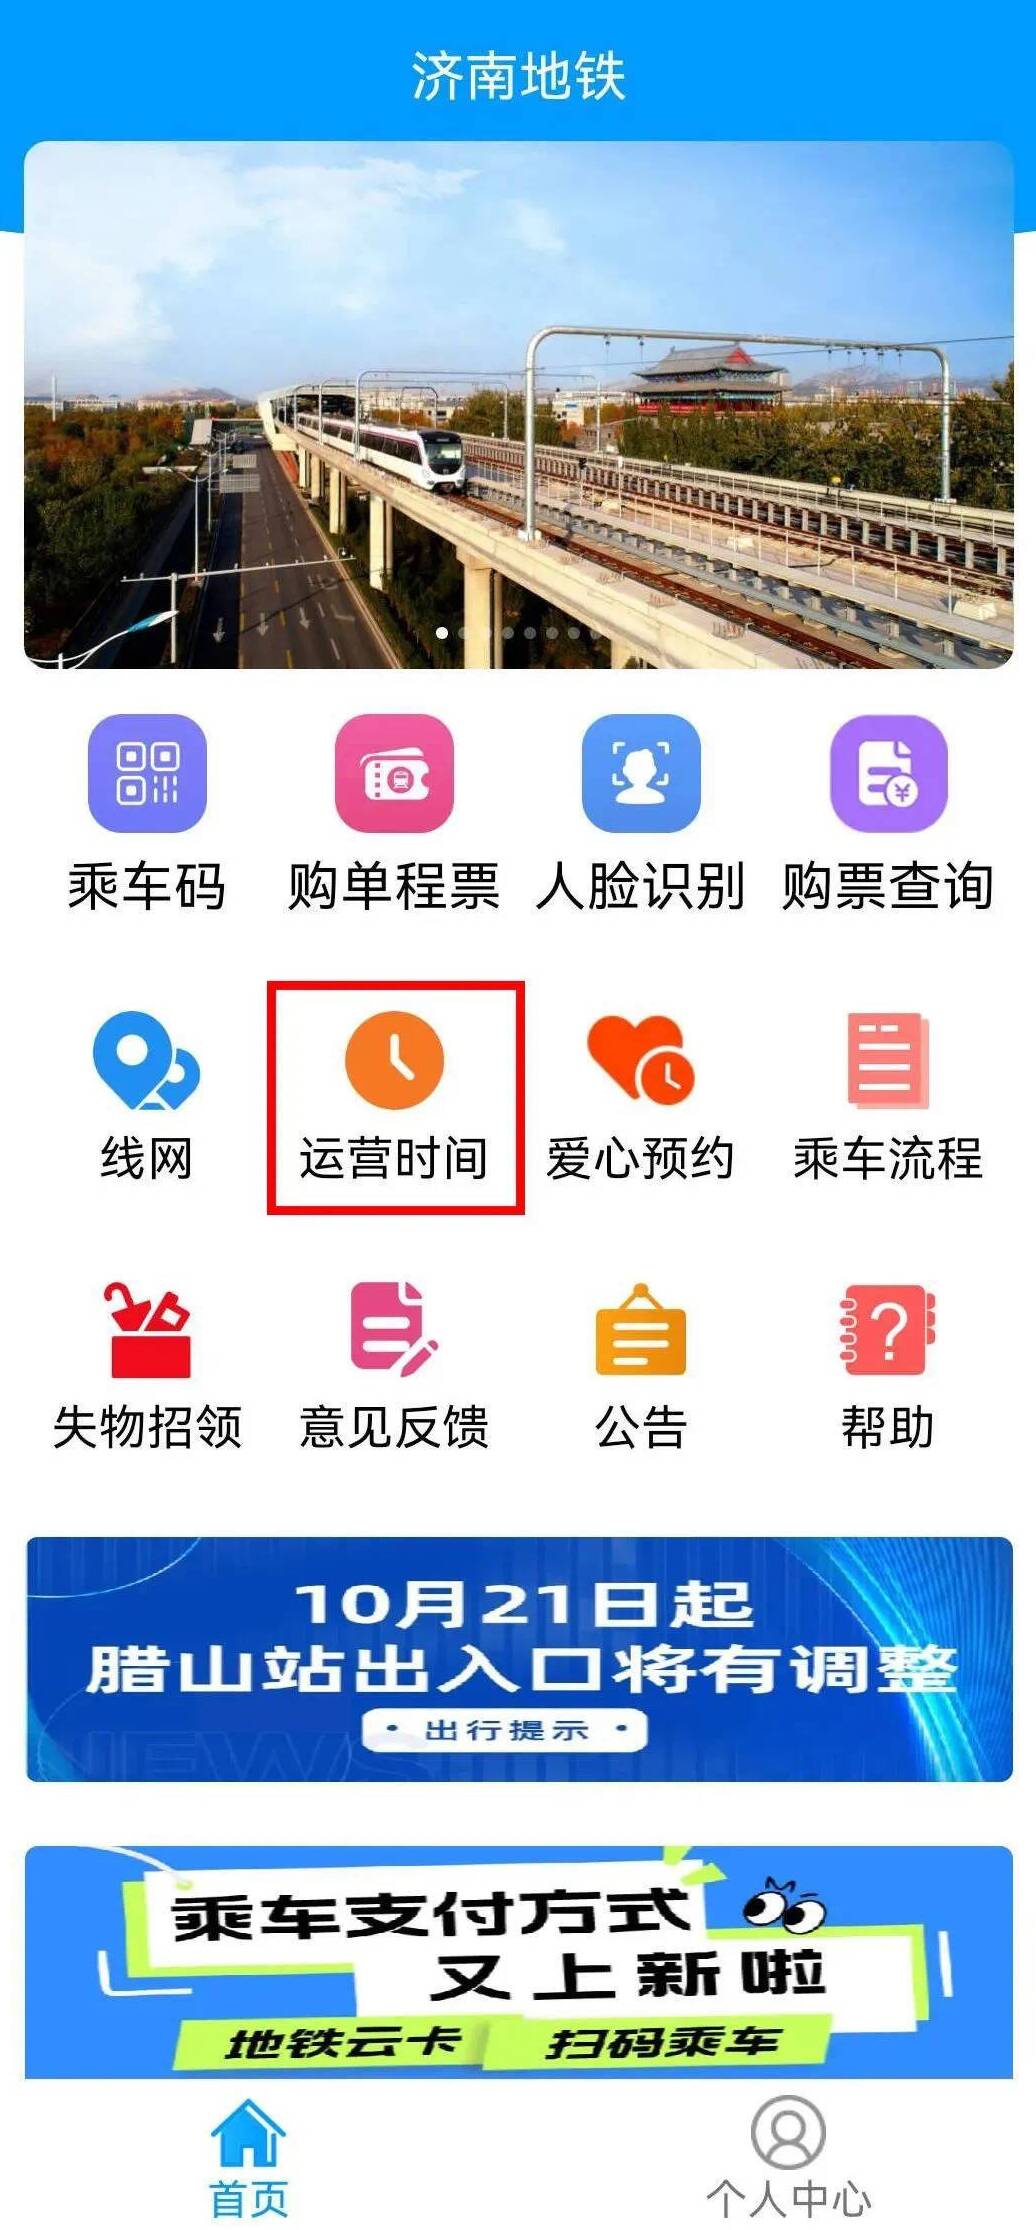 1月22日起  济南地铁将缩短早高峰行车间隔